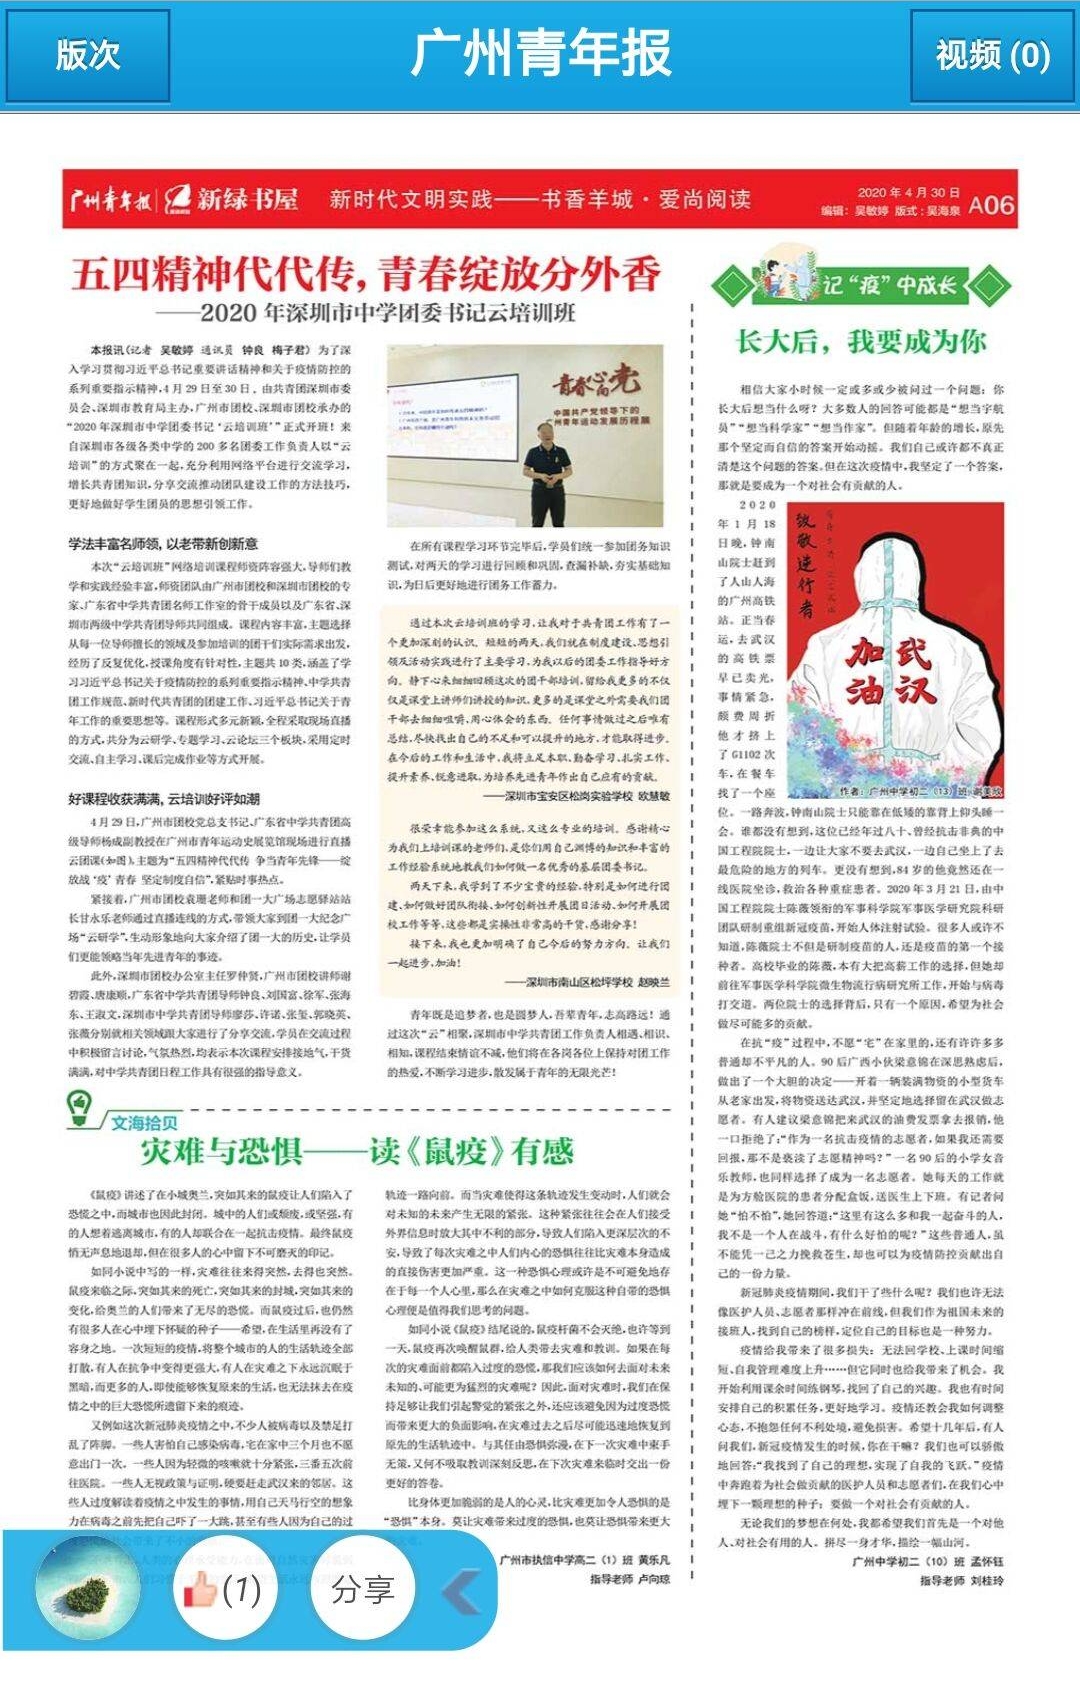 图4初二10班孟怀钰同学“抗疫”主题演讲稿发表在《广州青年报》